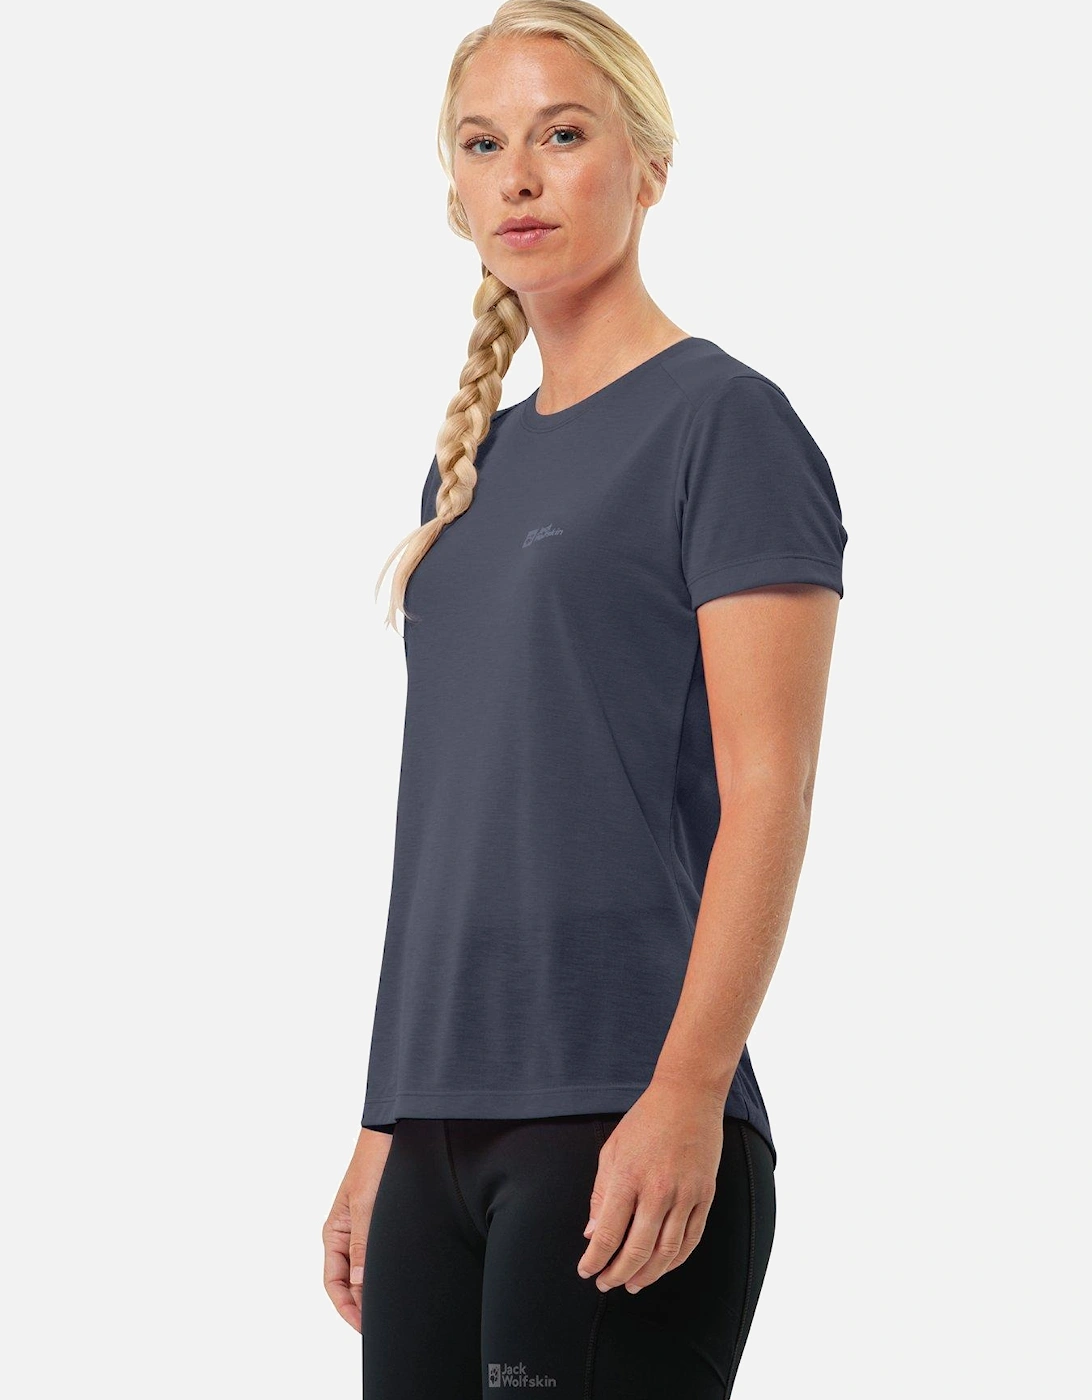 Womens Vonnan T-shirt - Grey, 3 of 2